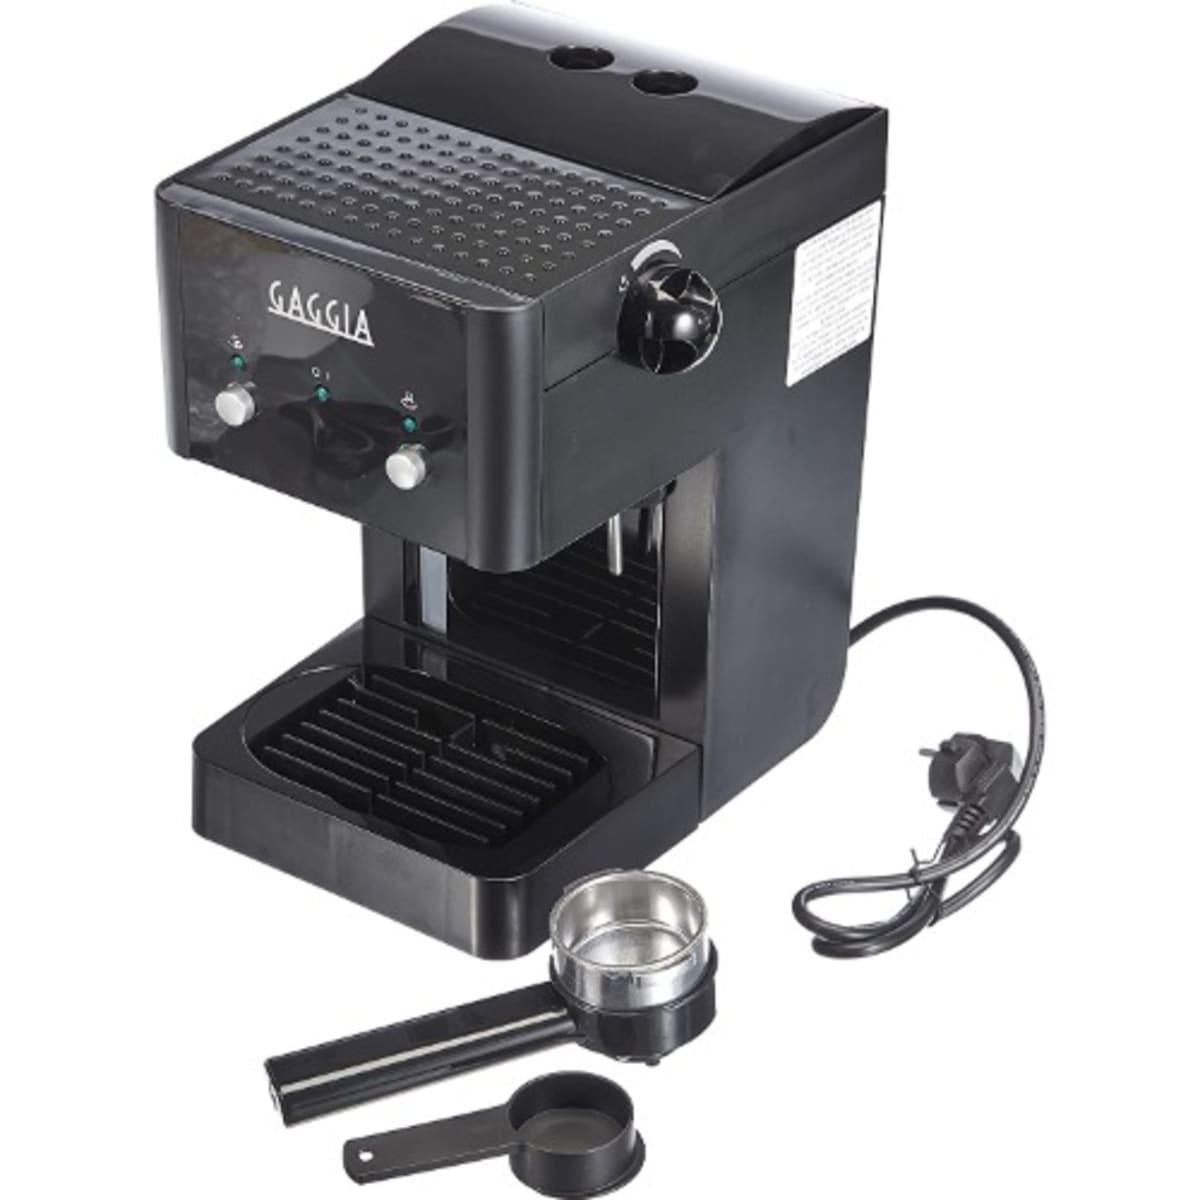 Gaggia Milano Gran Gaggia Style Manual Espresso Coffee Machine - 1025w -  R18423/11 Black